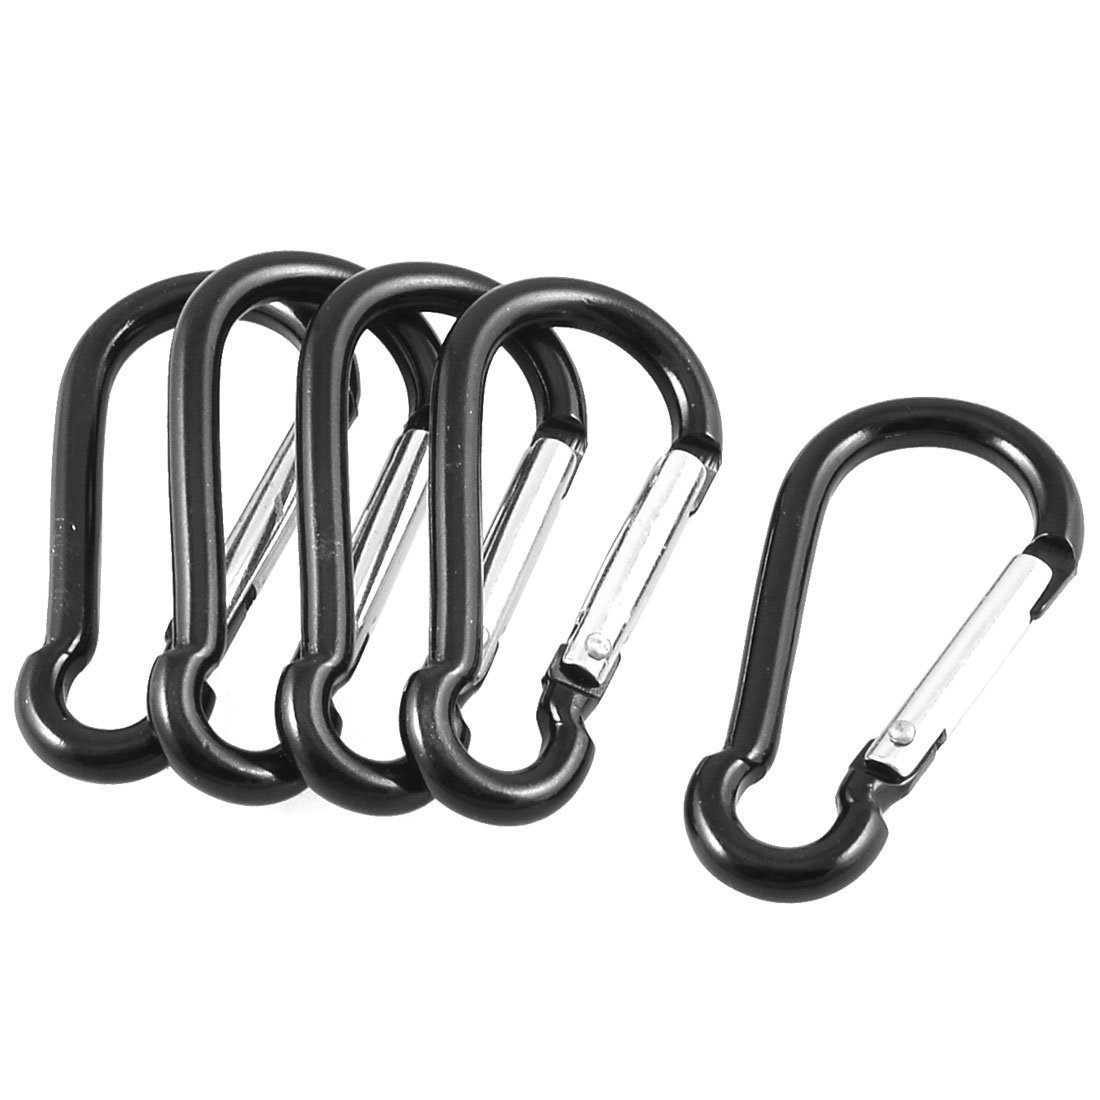 Гаджет  2015 Best Sale 5 Pcs Black Silver Aluminum Alloy Spring Gate Clip Carabiner Hook None Изготовление под заказ